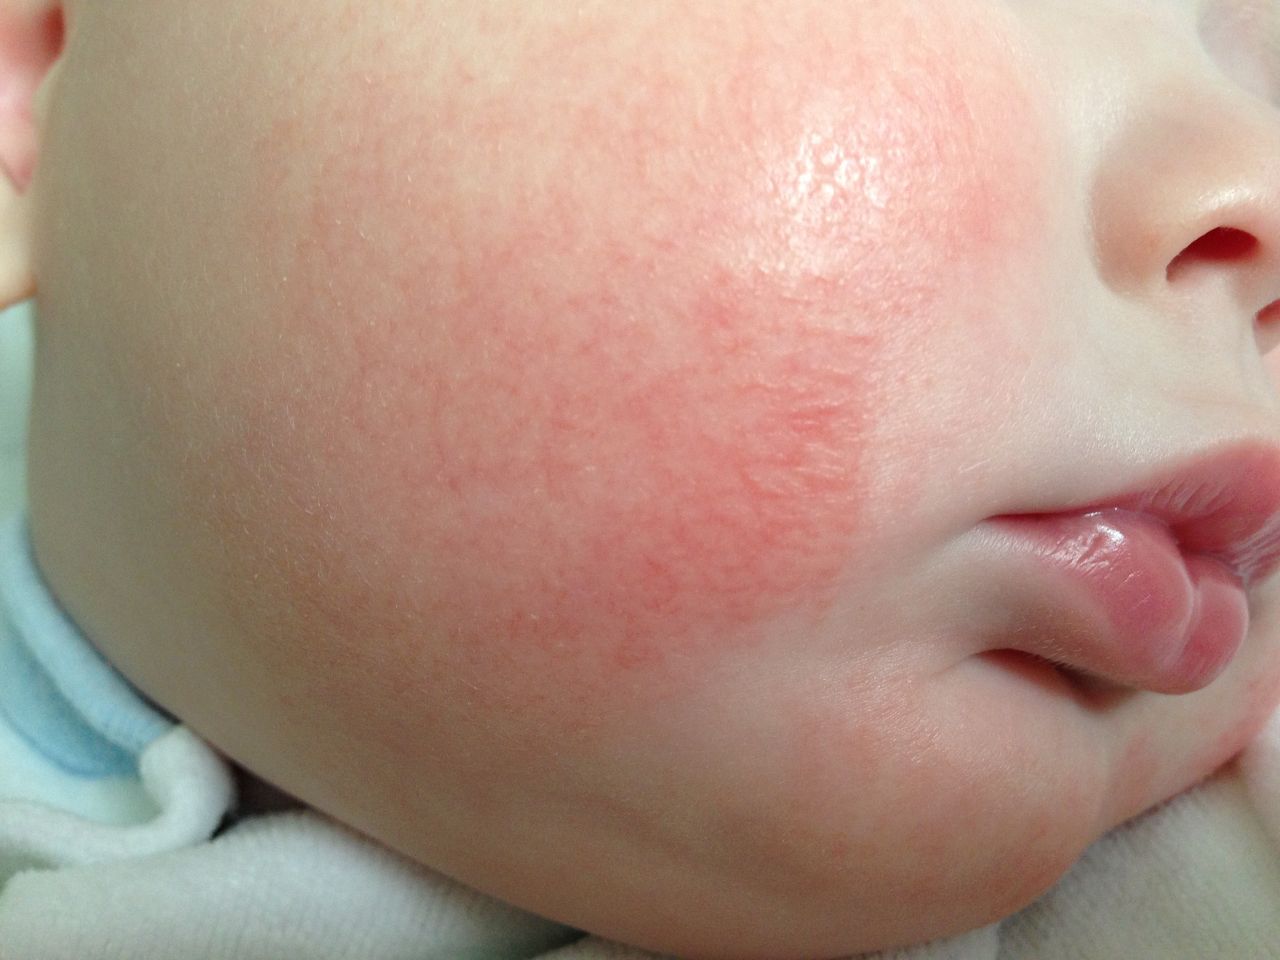 Ruam alergi pada wajah bayi